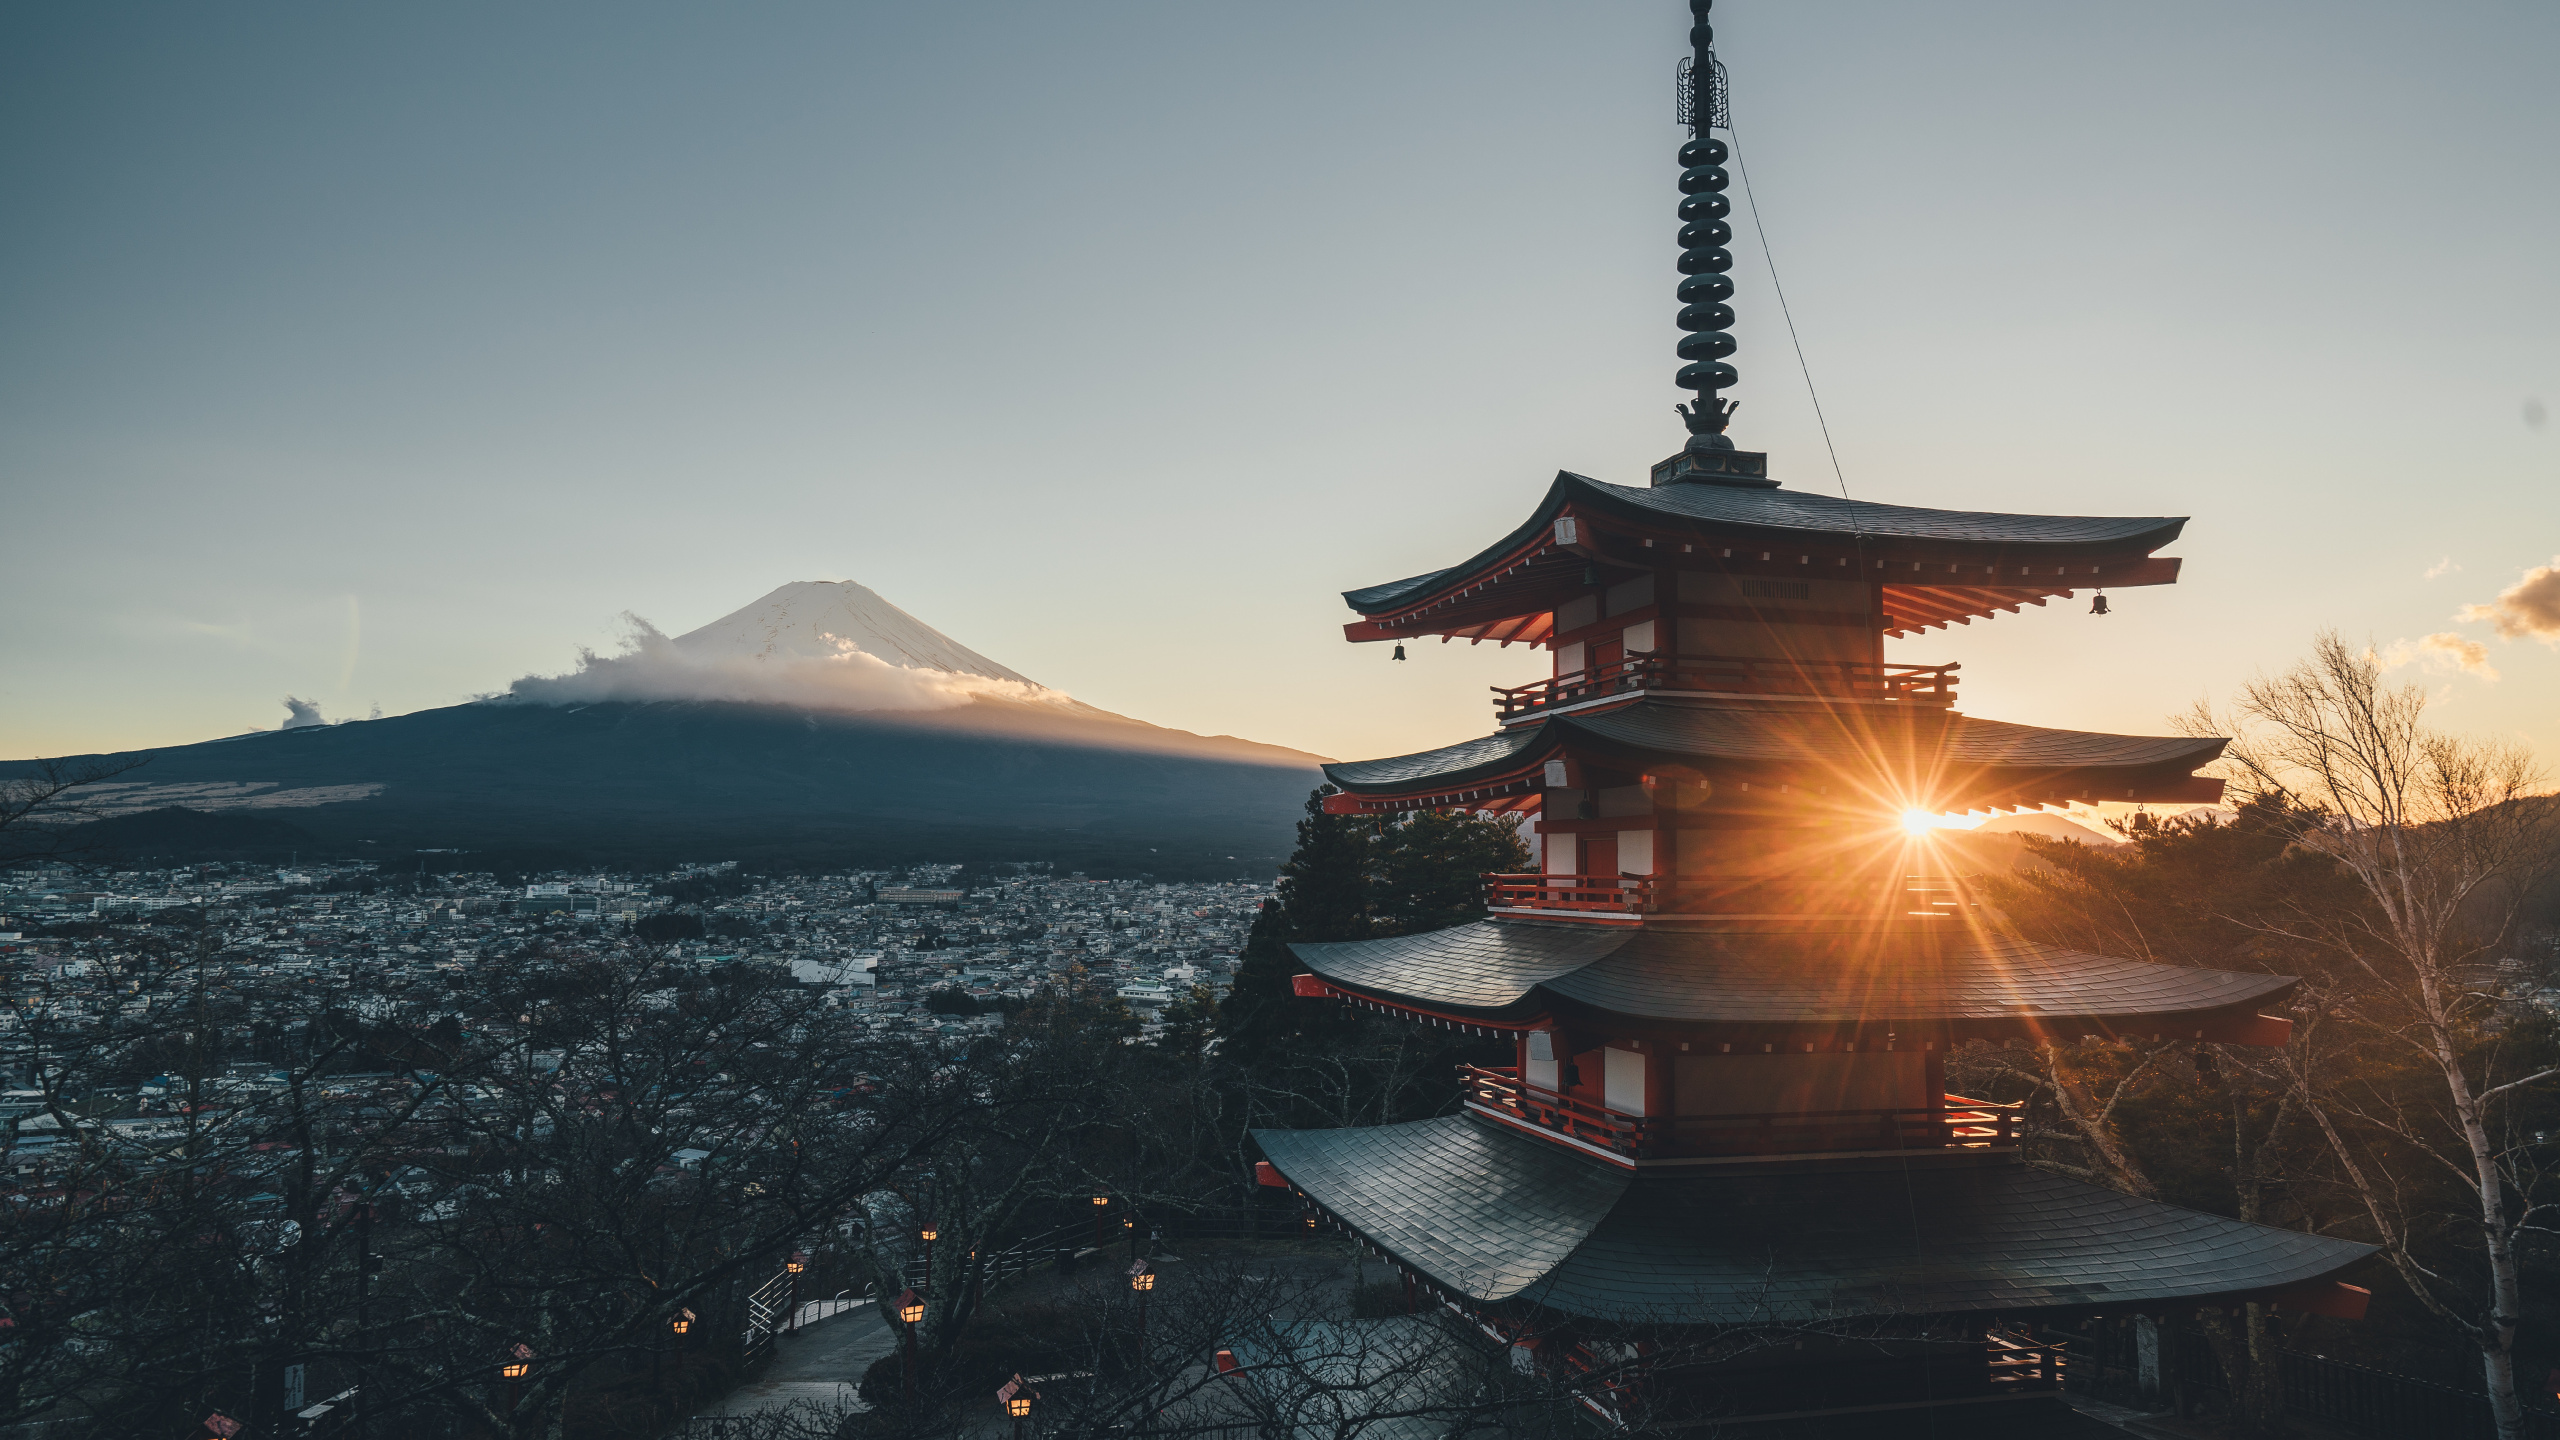 富士山, 建筑, 日本建筑, 天空, 中国建筑 壁纸 2560x1440 允许